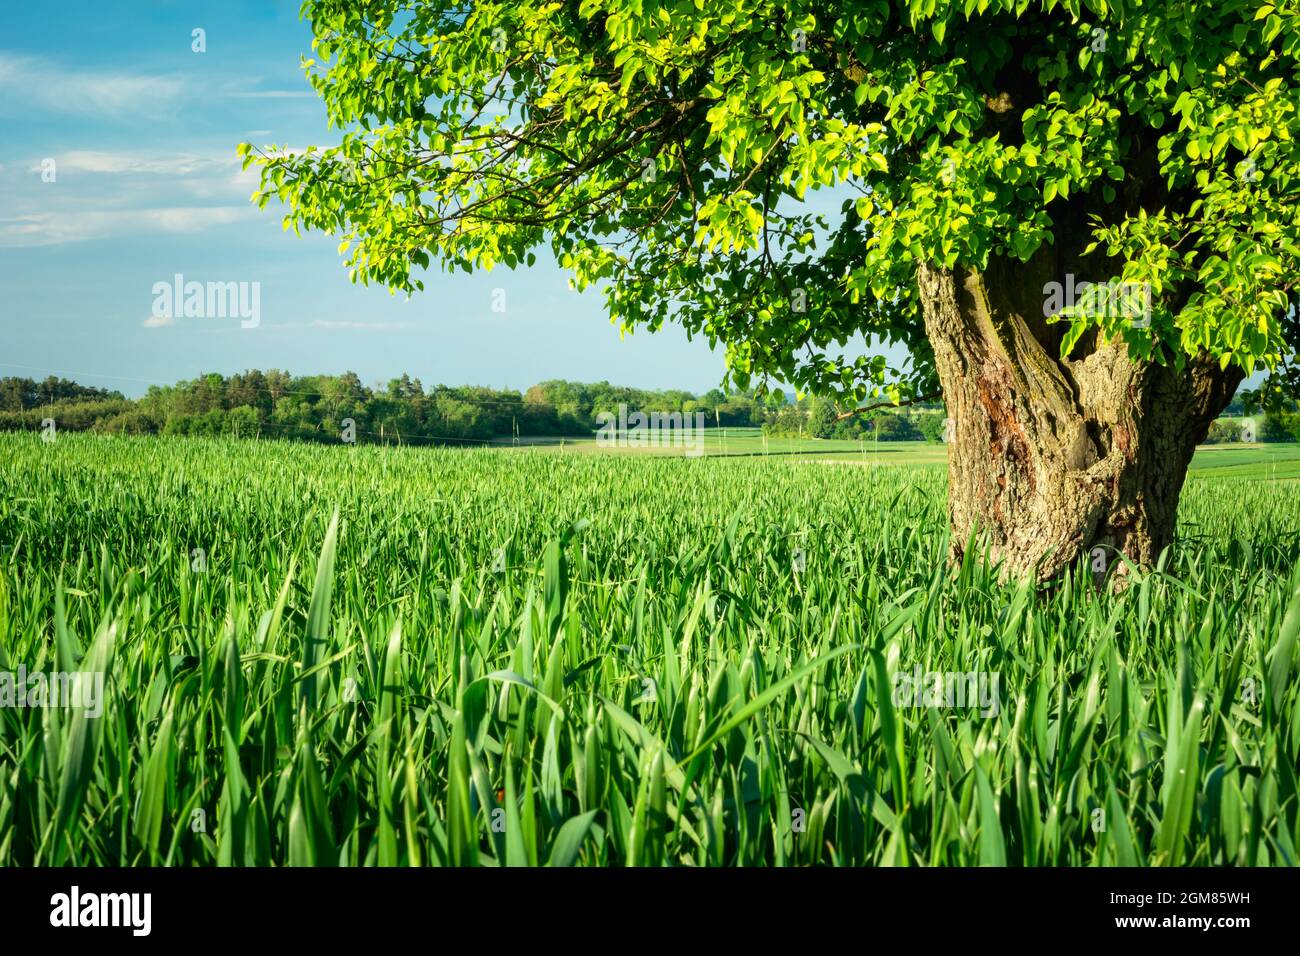 Un gran árbol caducifolio que crece en un campo verde, Staw, Polonia Foto de stock